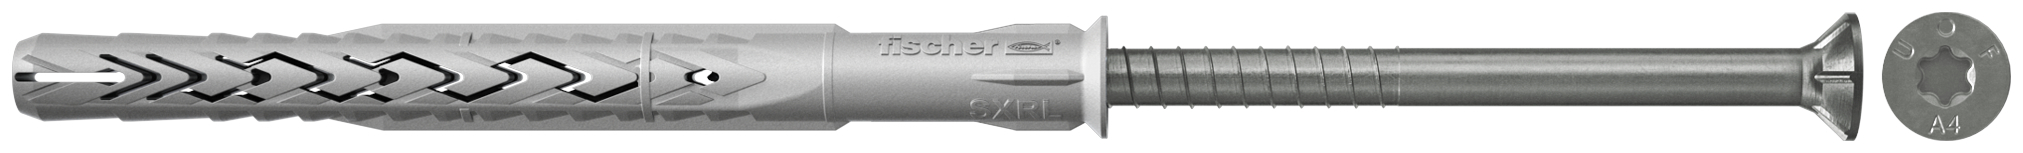 fischer Tasselli prolungati SXRL 8x120 T A4 (1 Pz.) Tassello prolungato in nylon con marcatura CE con vite premontata in acciaio inox A4, T.S.P. impronta torx fie3166